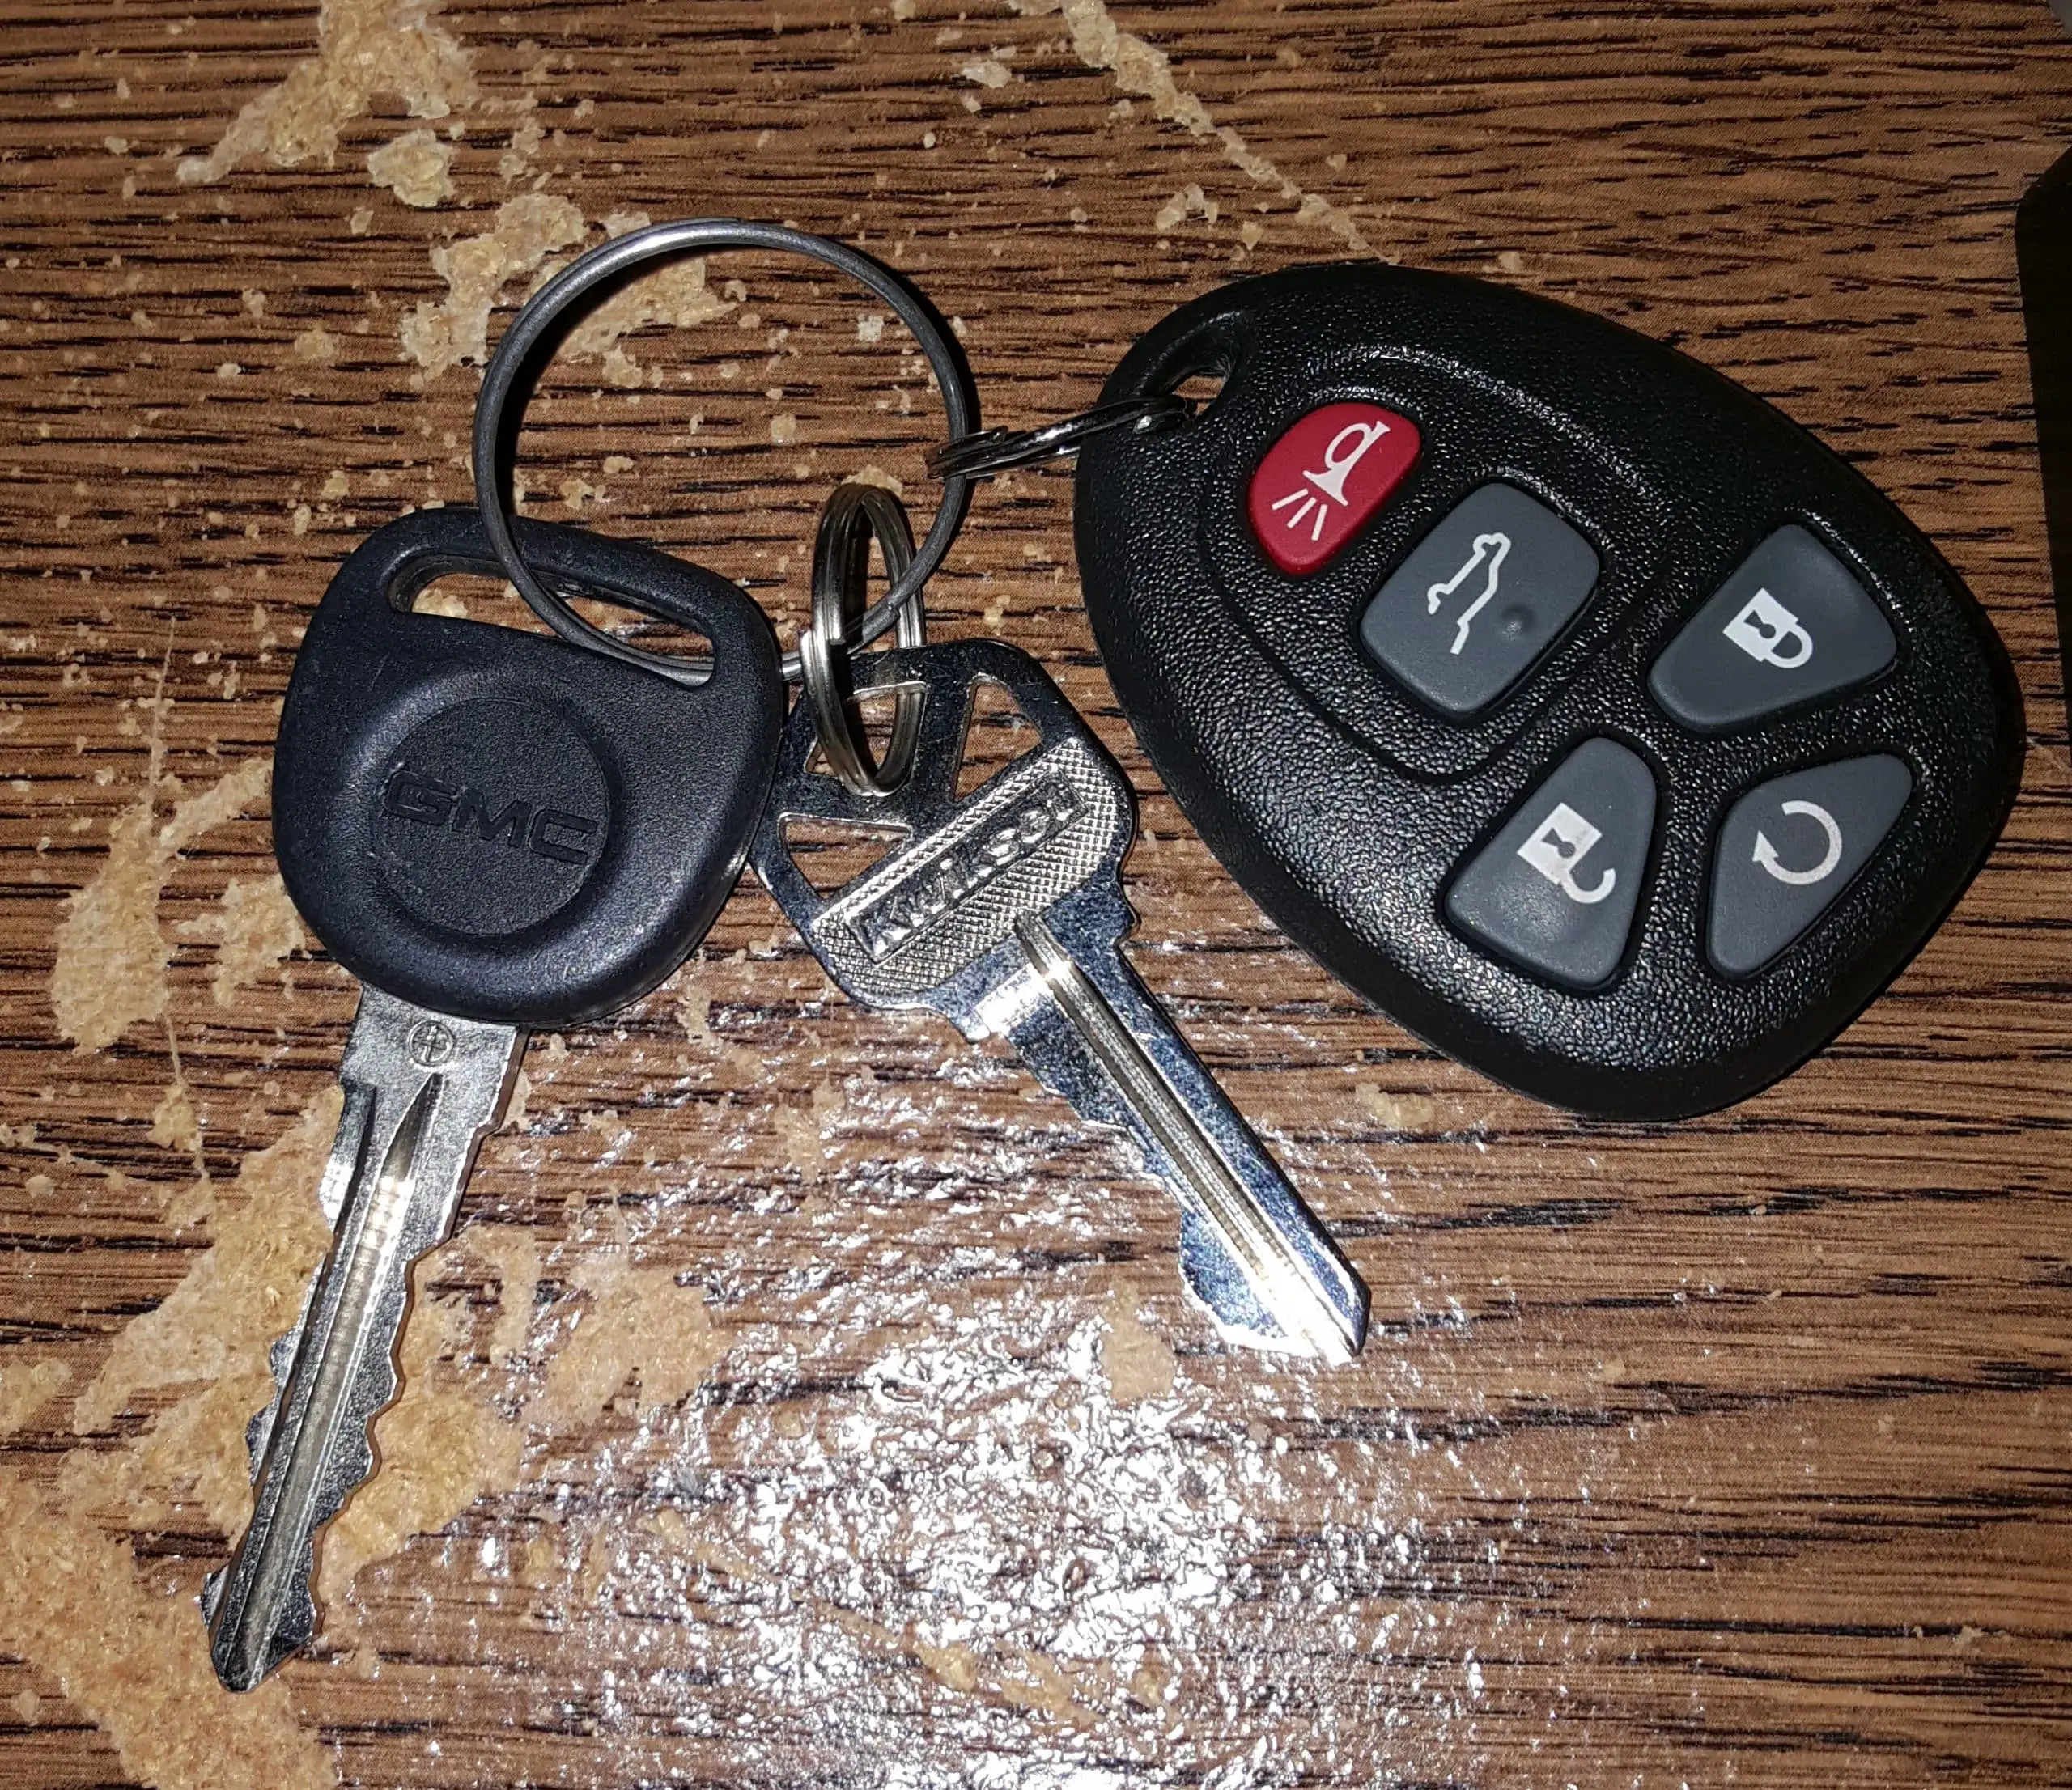 Car and house keys